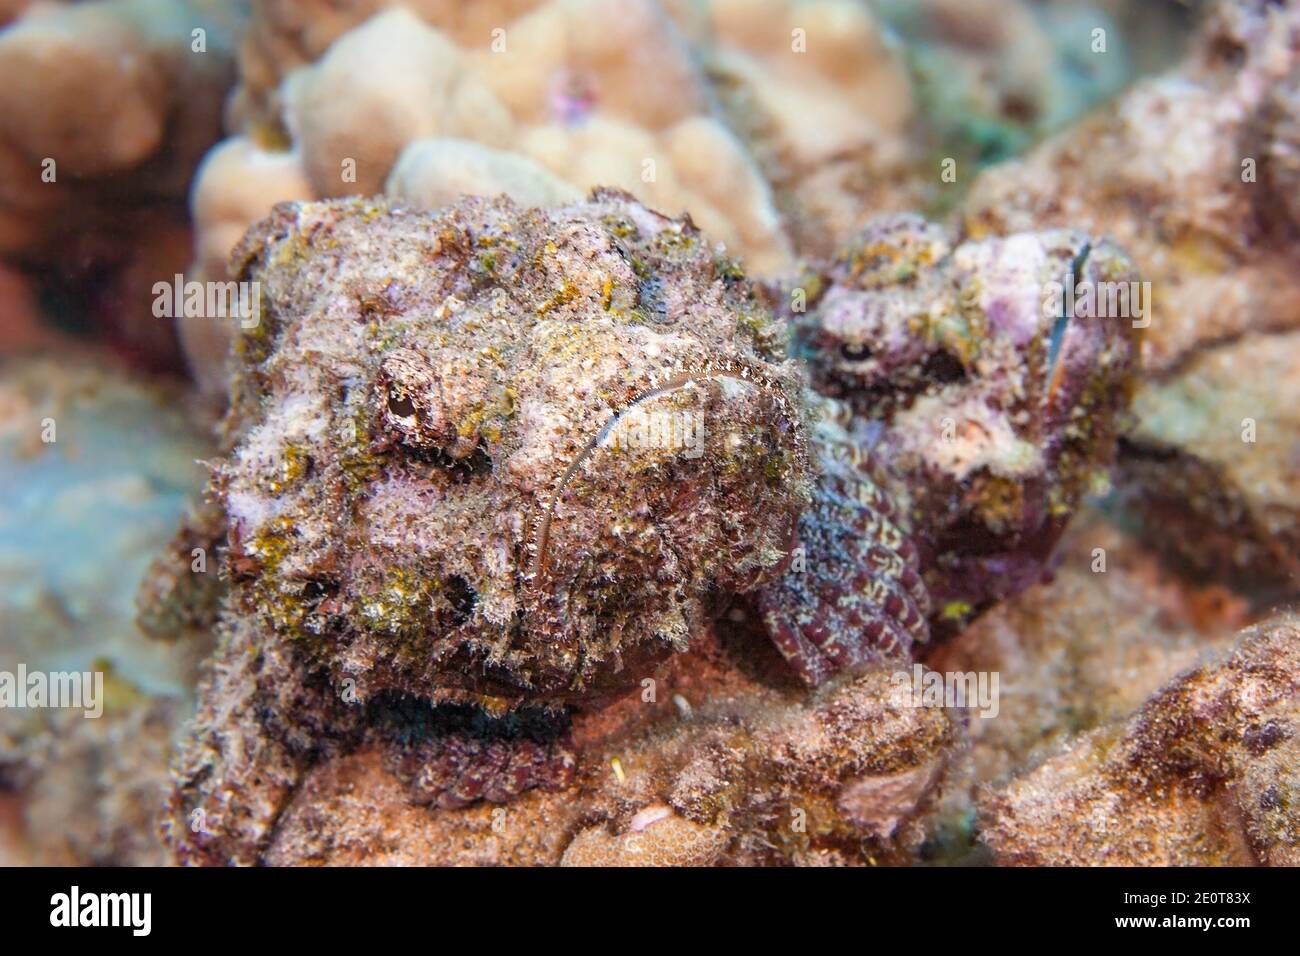 Le scorpionfish du diable, Scorpaenopsis diabolus, est un prédateur ambush qui repose sur un excellent camouflage. Cette paire se déplacerait autour du récif ensemble. Banque D'Images